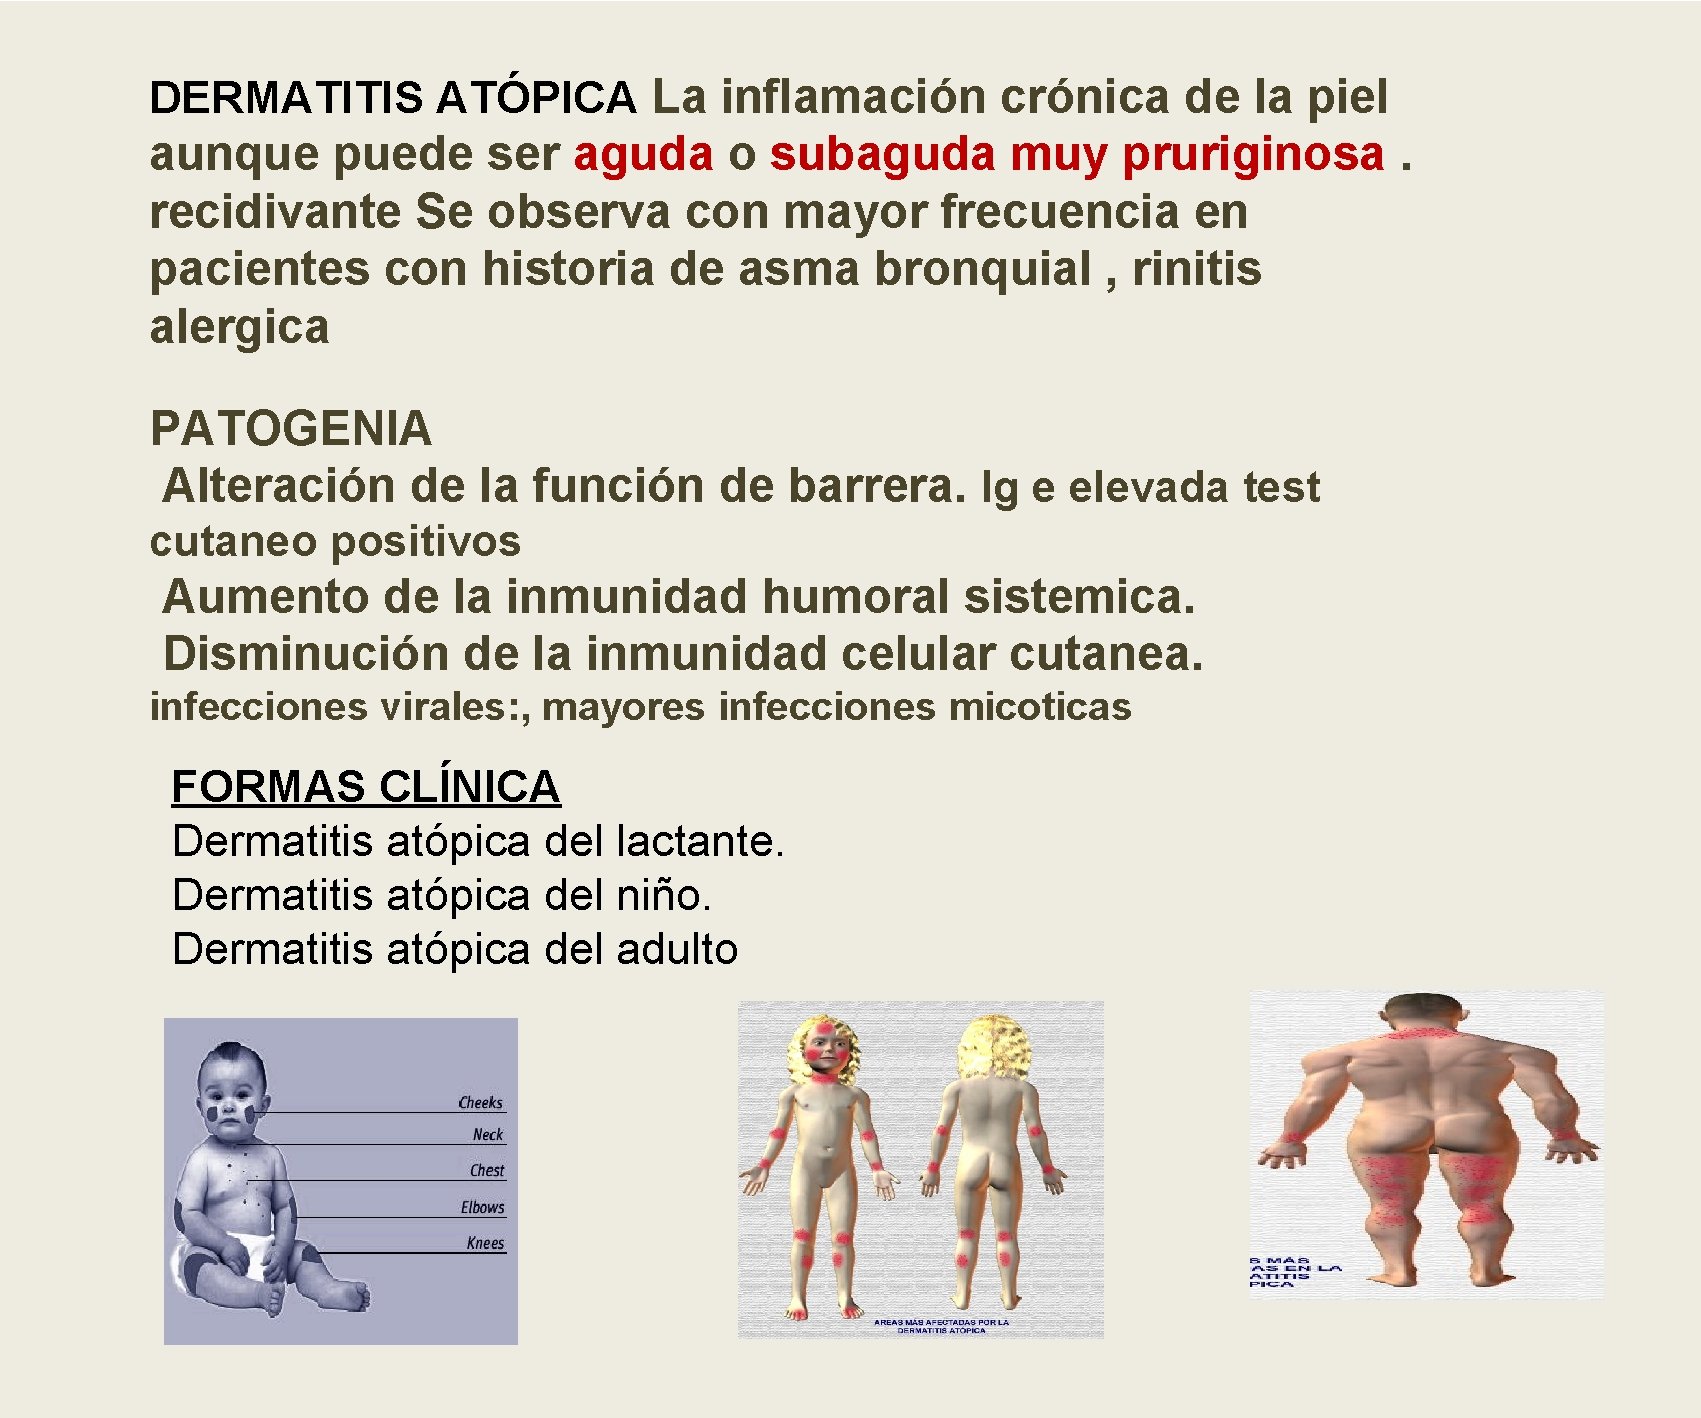 DERMATITIS ATÓPICA La inflamación crónica de la piel aunque puede ser aguda o subaguda